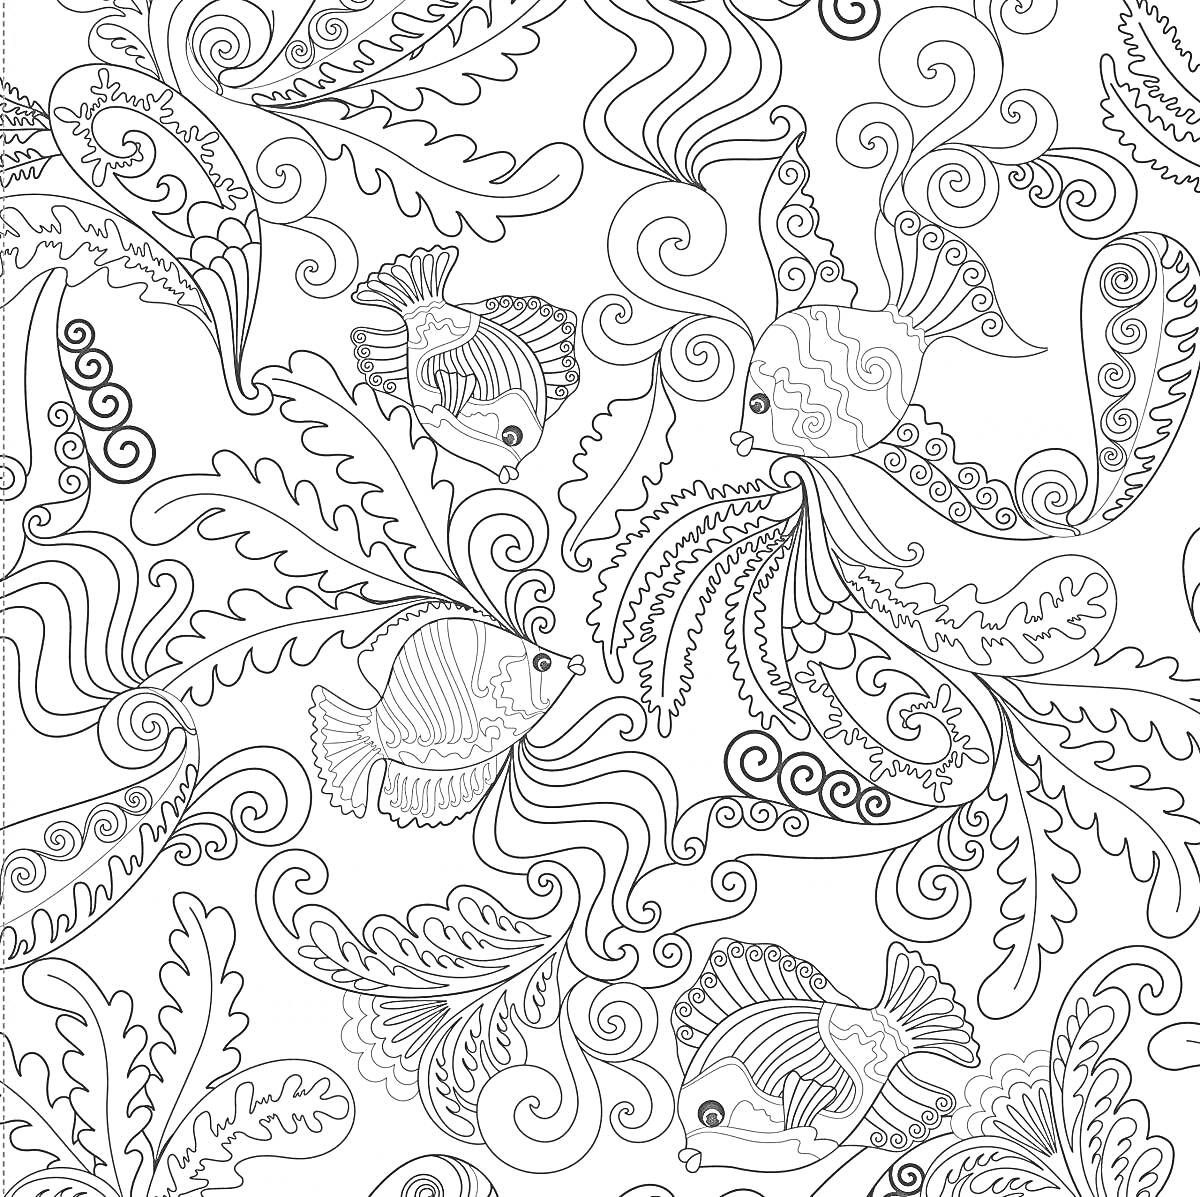 РаскраскаАнтистресс раскраска с морскими элементами: рыбки, морские водоросли, завитки, узоры